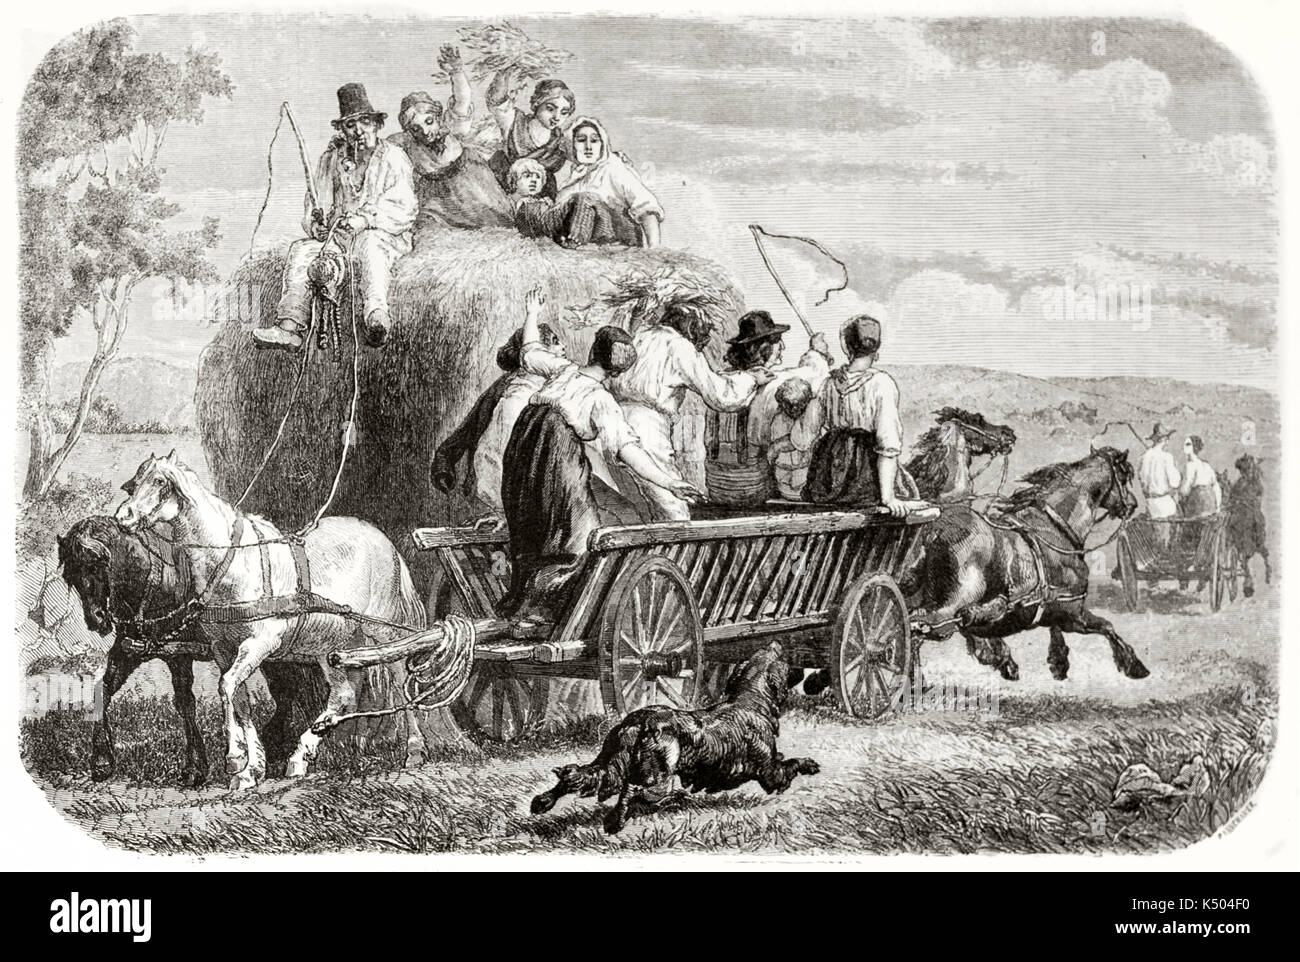 Bauernhaus Familie auf einem Ballen Heu auf einem Wagen durch die Pferde in einem ländlichen Rahmen durchgeführt. Heuernte in Fünen Insel Dänemarks. Von Frolik auf Le Tour du Monde Paris 1862 veröffentlicht erstellt Stockfoto